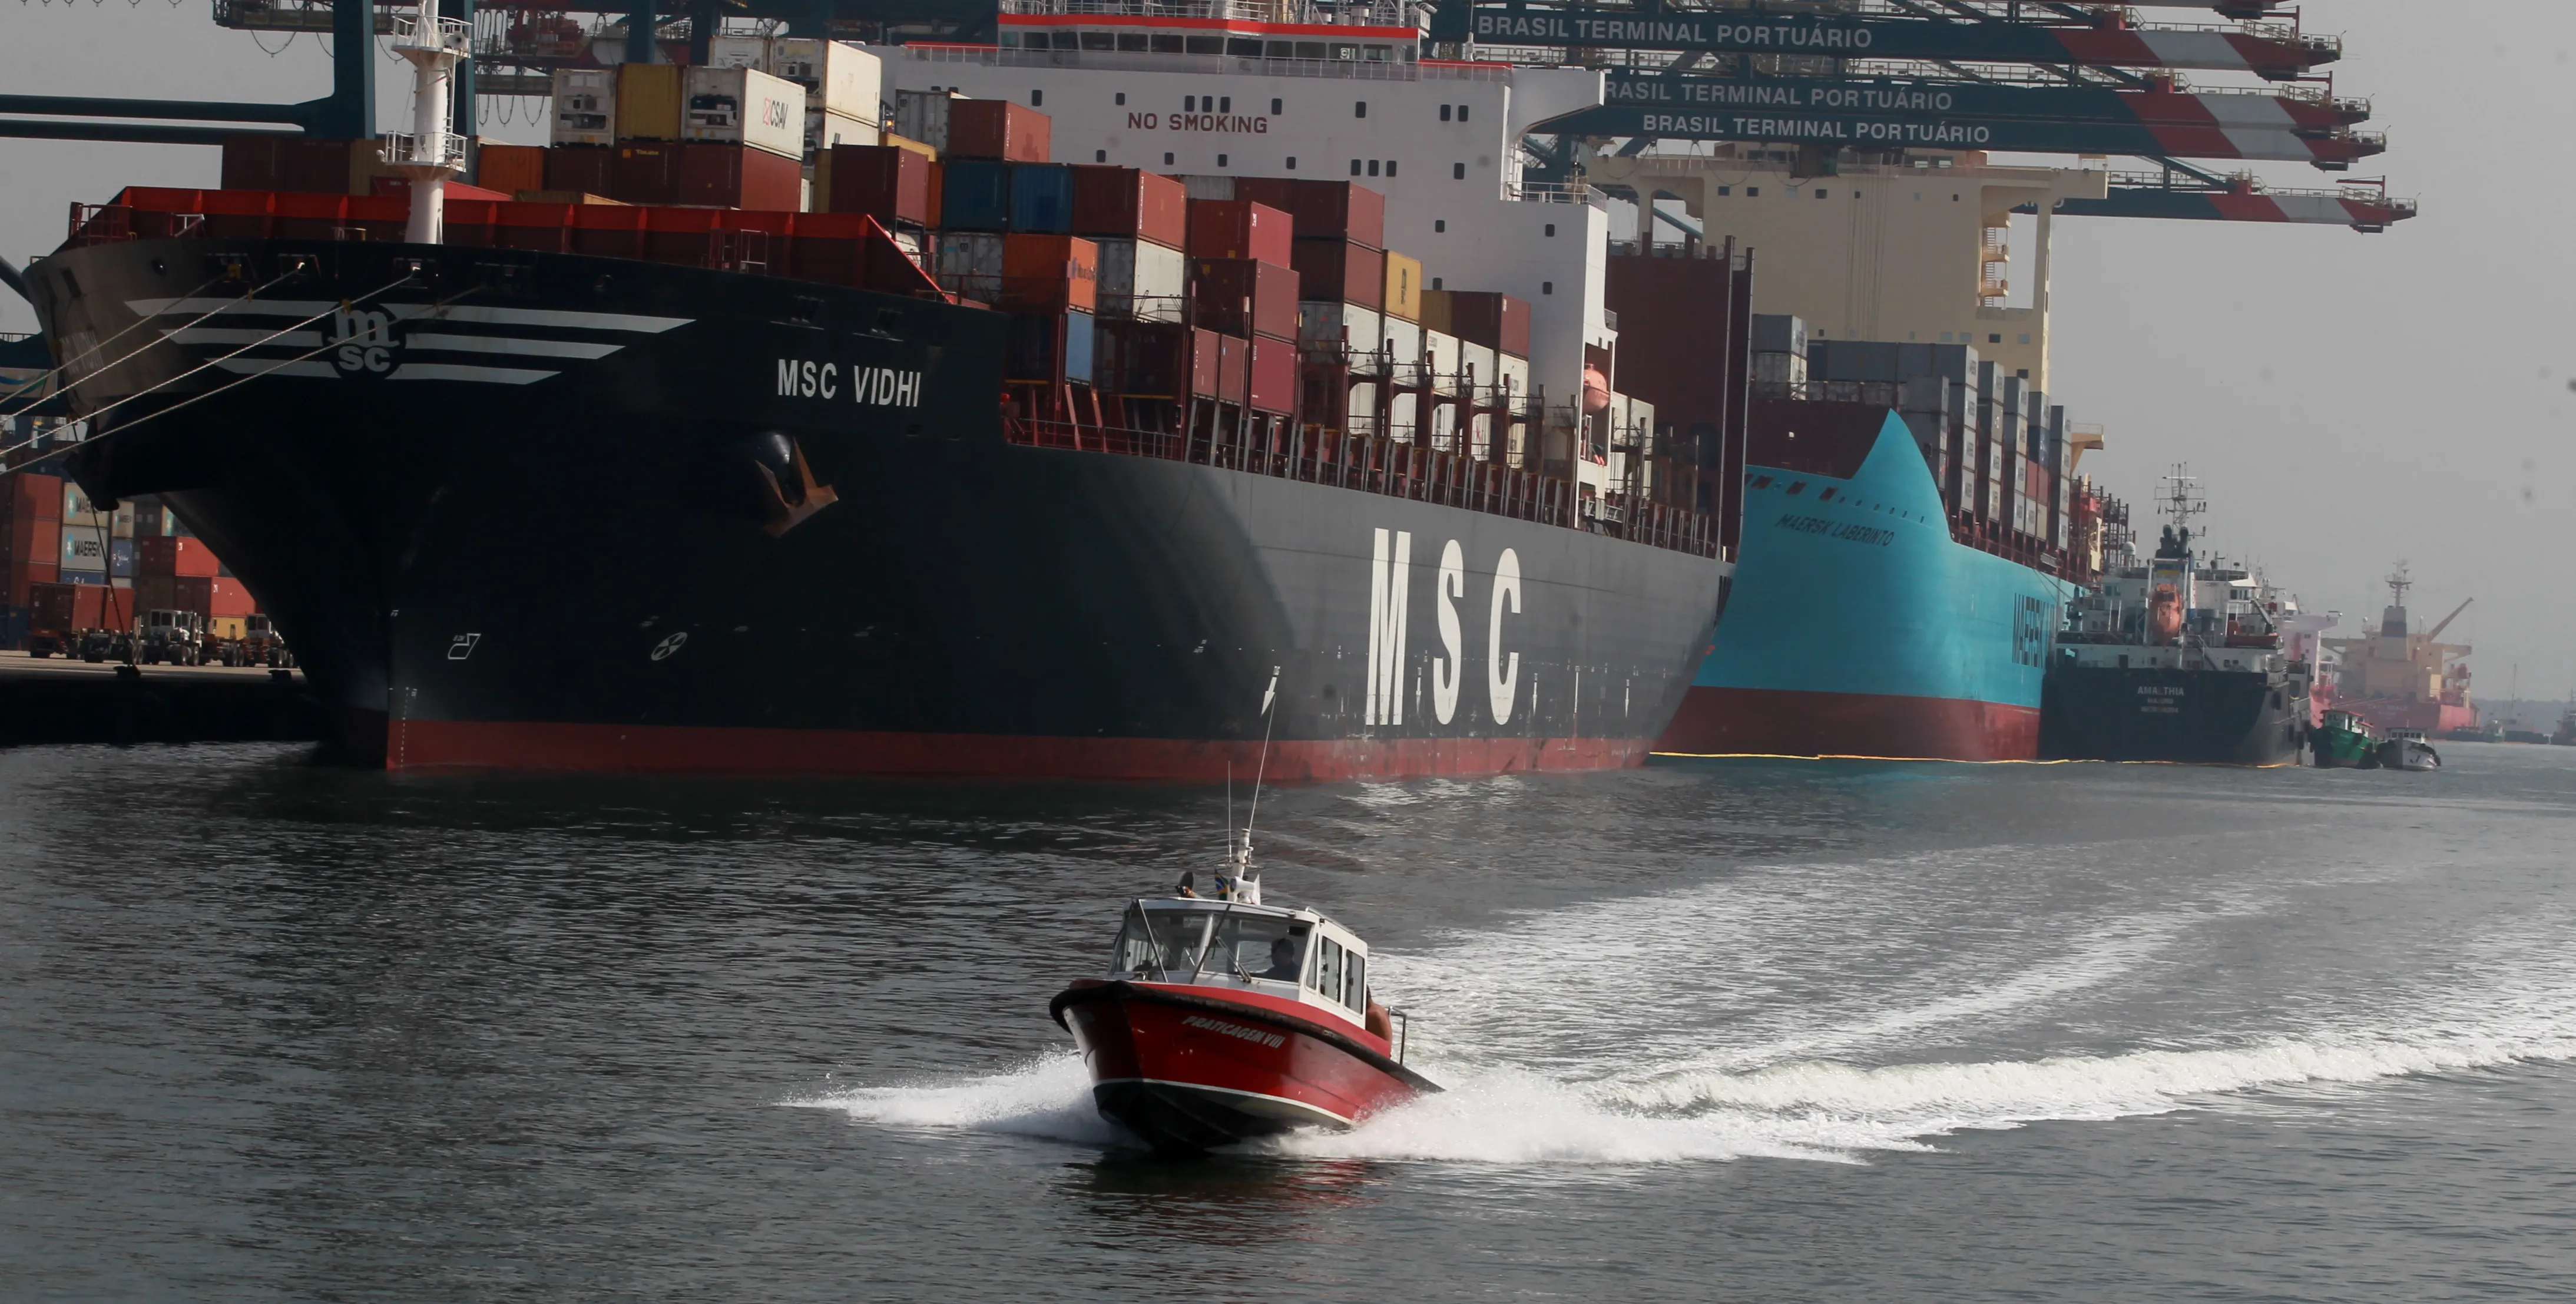     Lancha da Praticagem no canal do Porto de Santos: prático orienta a navegação de embarcações    